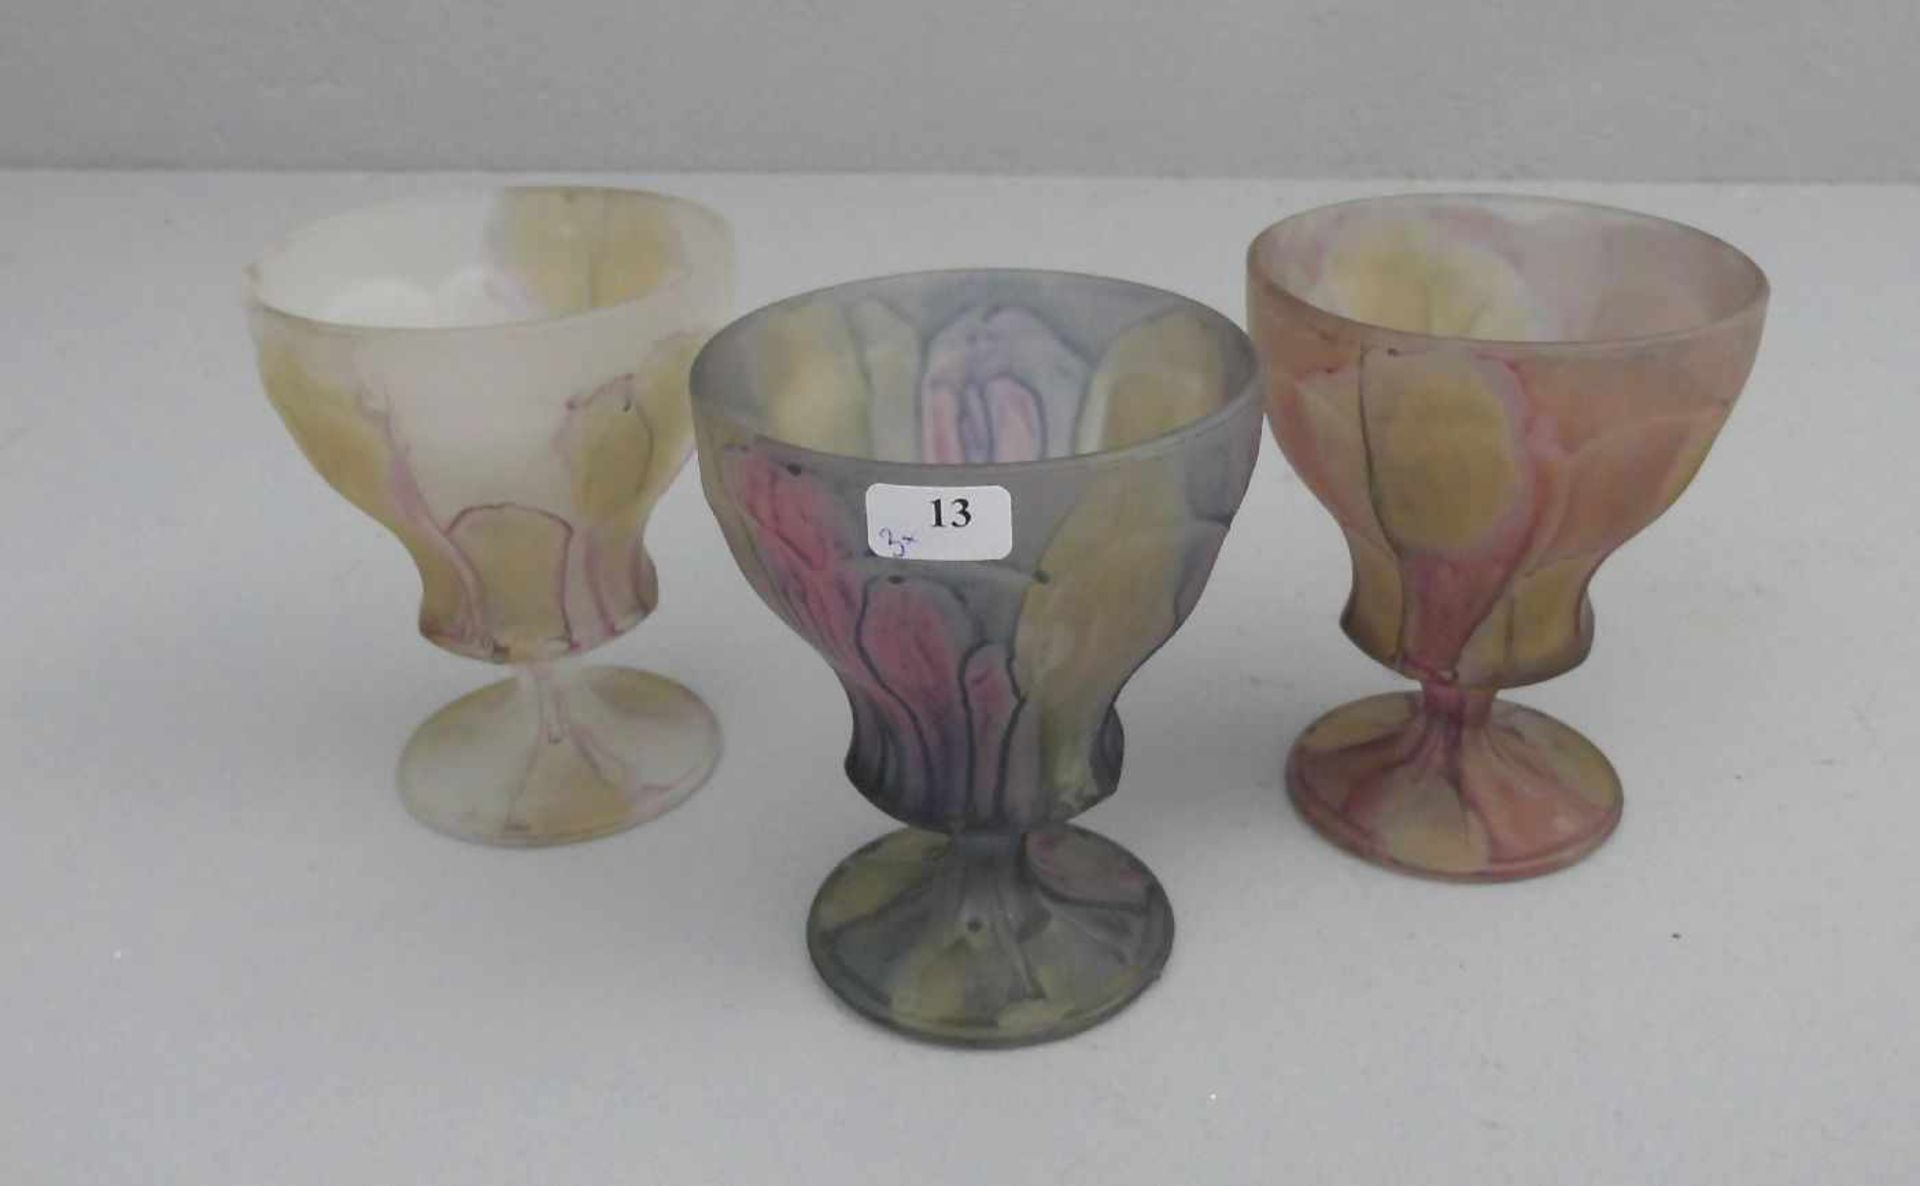 3 EISBECHER / GLAS - FUSSSCHALEN / ice cream glas bowls, Mitte 20. Jh., Pressglas. Konische Form mit